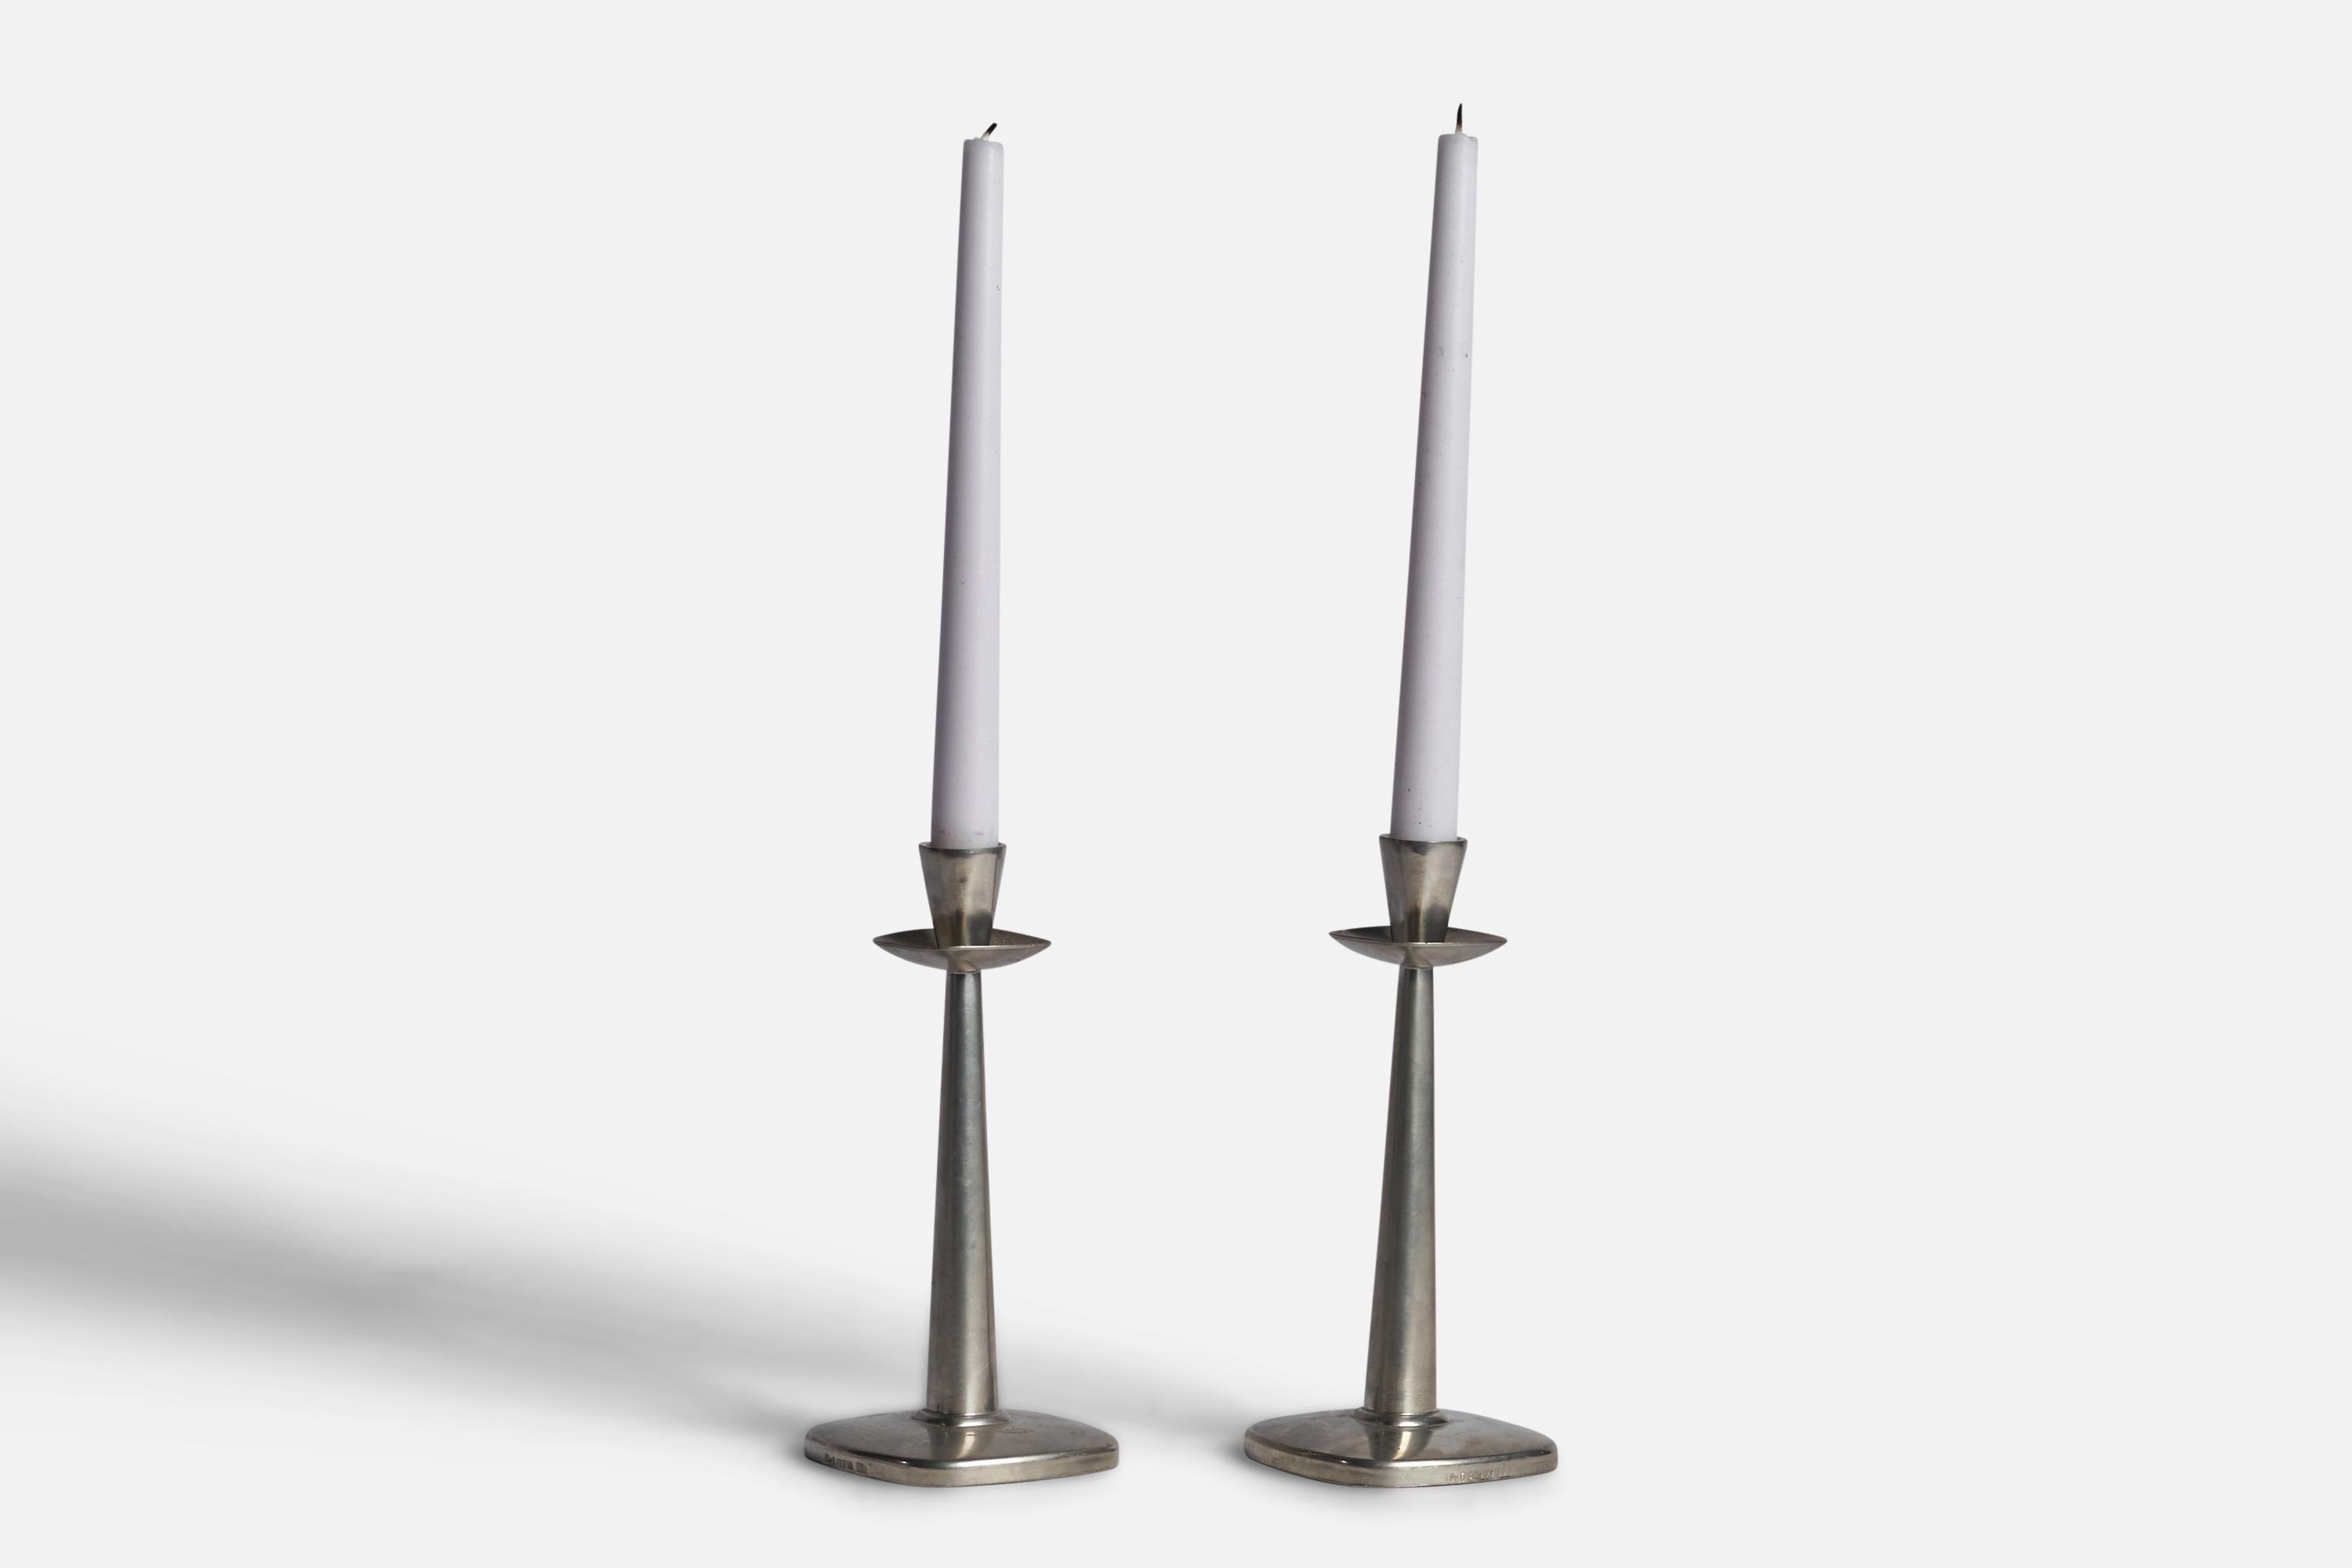 Ein Paar Kerzenhalter aus Zinn, entworfen und hergestellt in Schweden, 1930er Jahre.

für Kerzen mit einem Durchmesser von 0,70